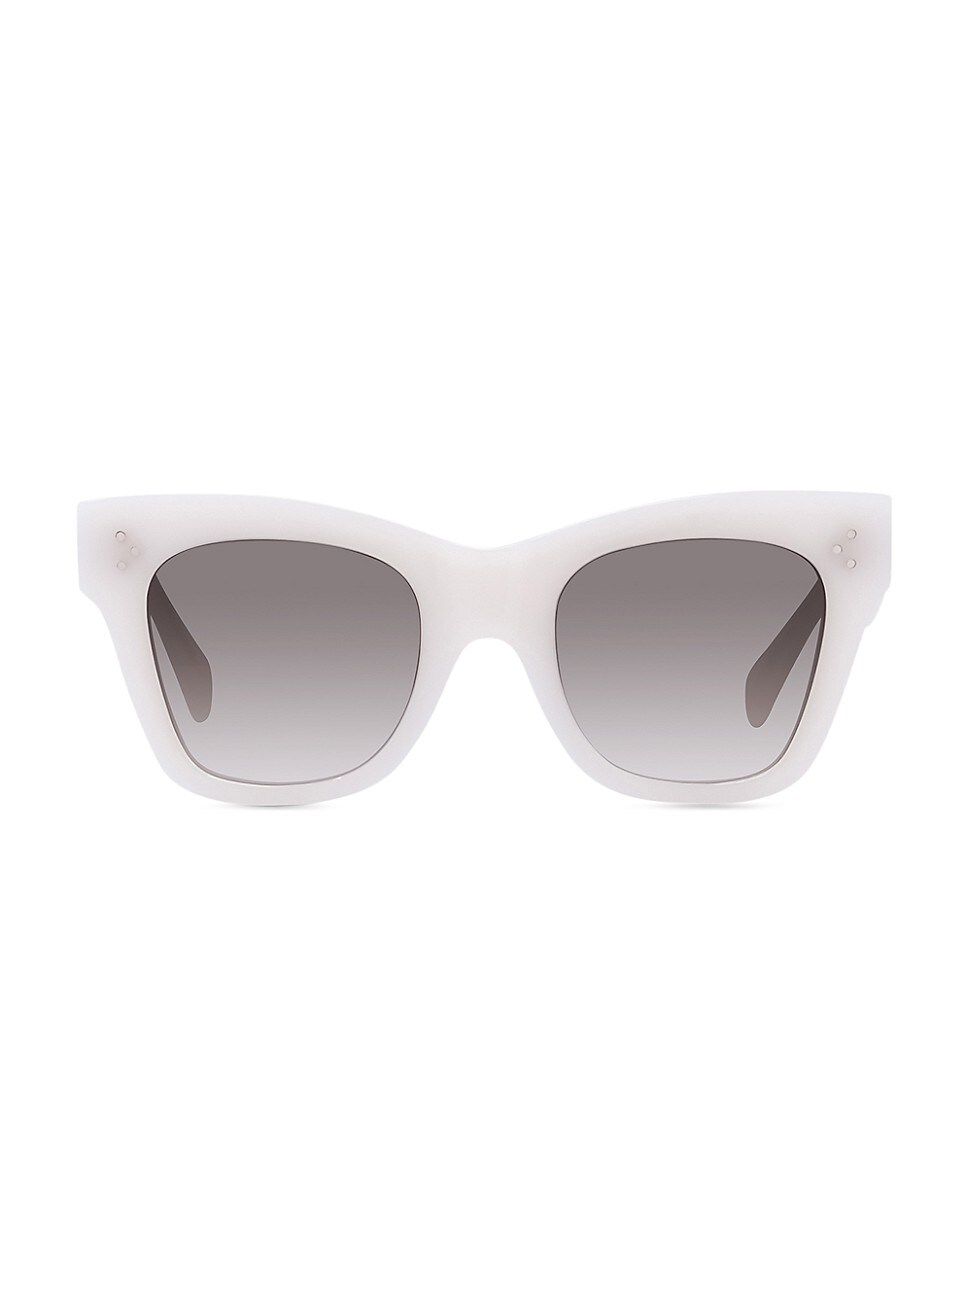 CELINE Women's 50MM Rectangular Sunglasses - Ivory | Saks Fifth Avenue